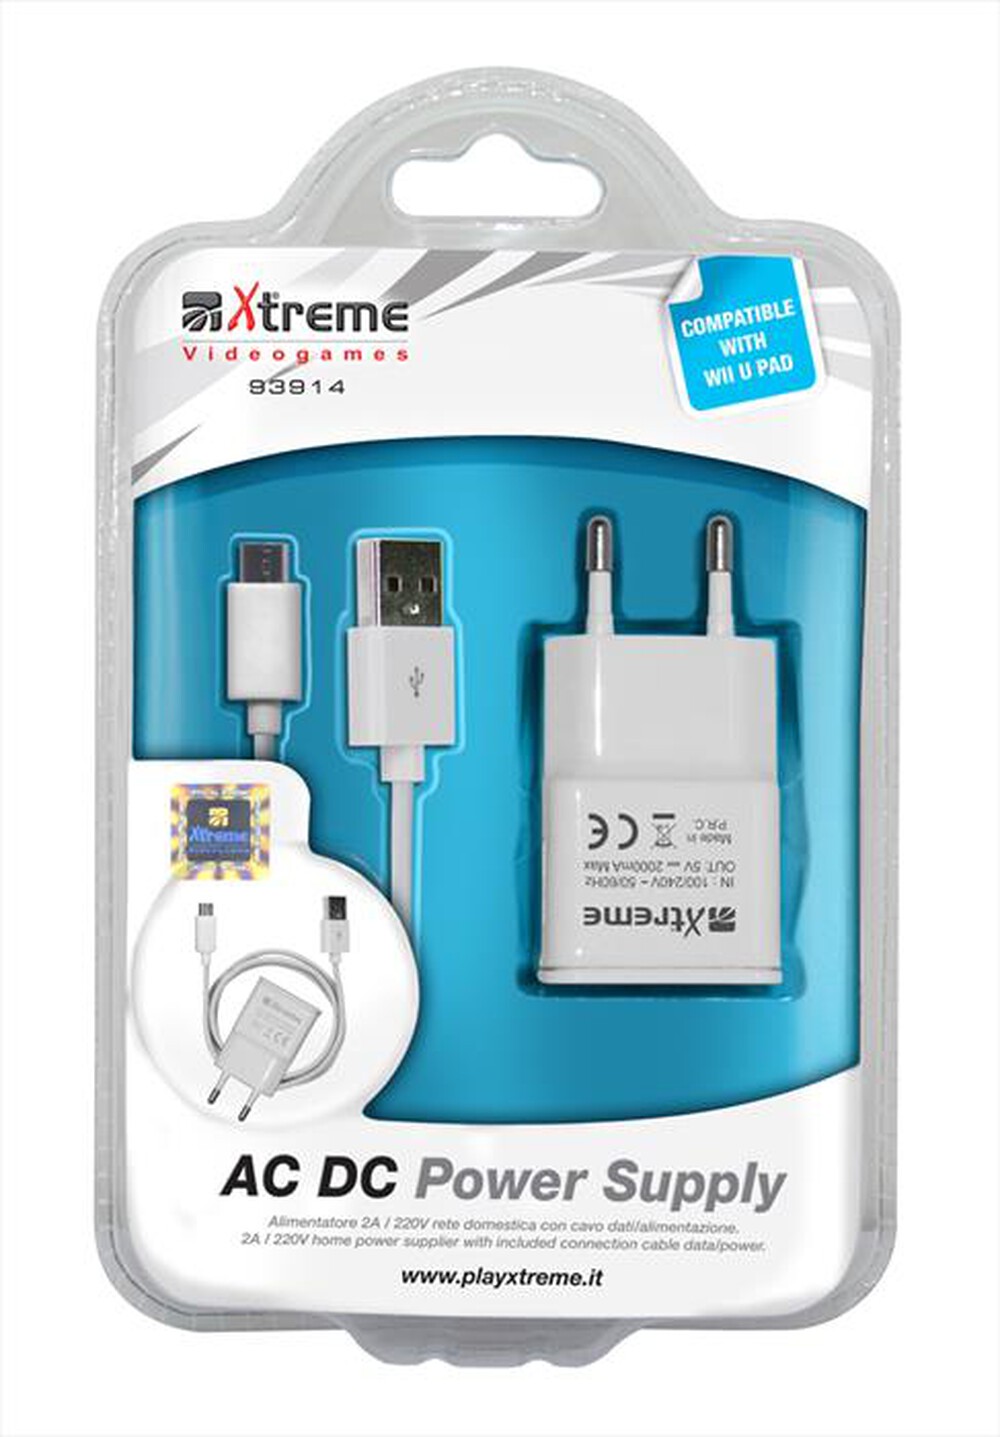 "XTREME - 93914 - Wii-U AC DC Power Supply"